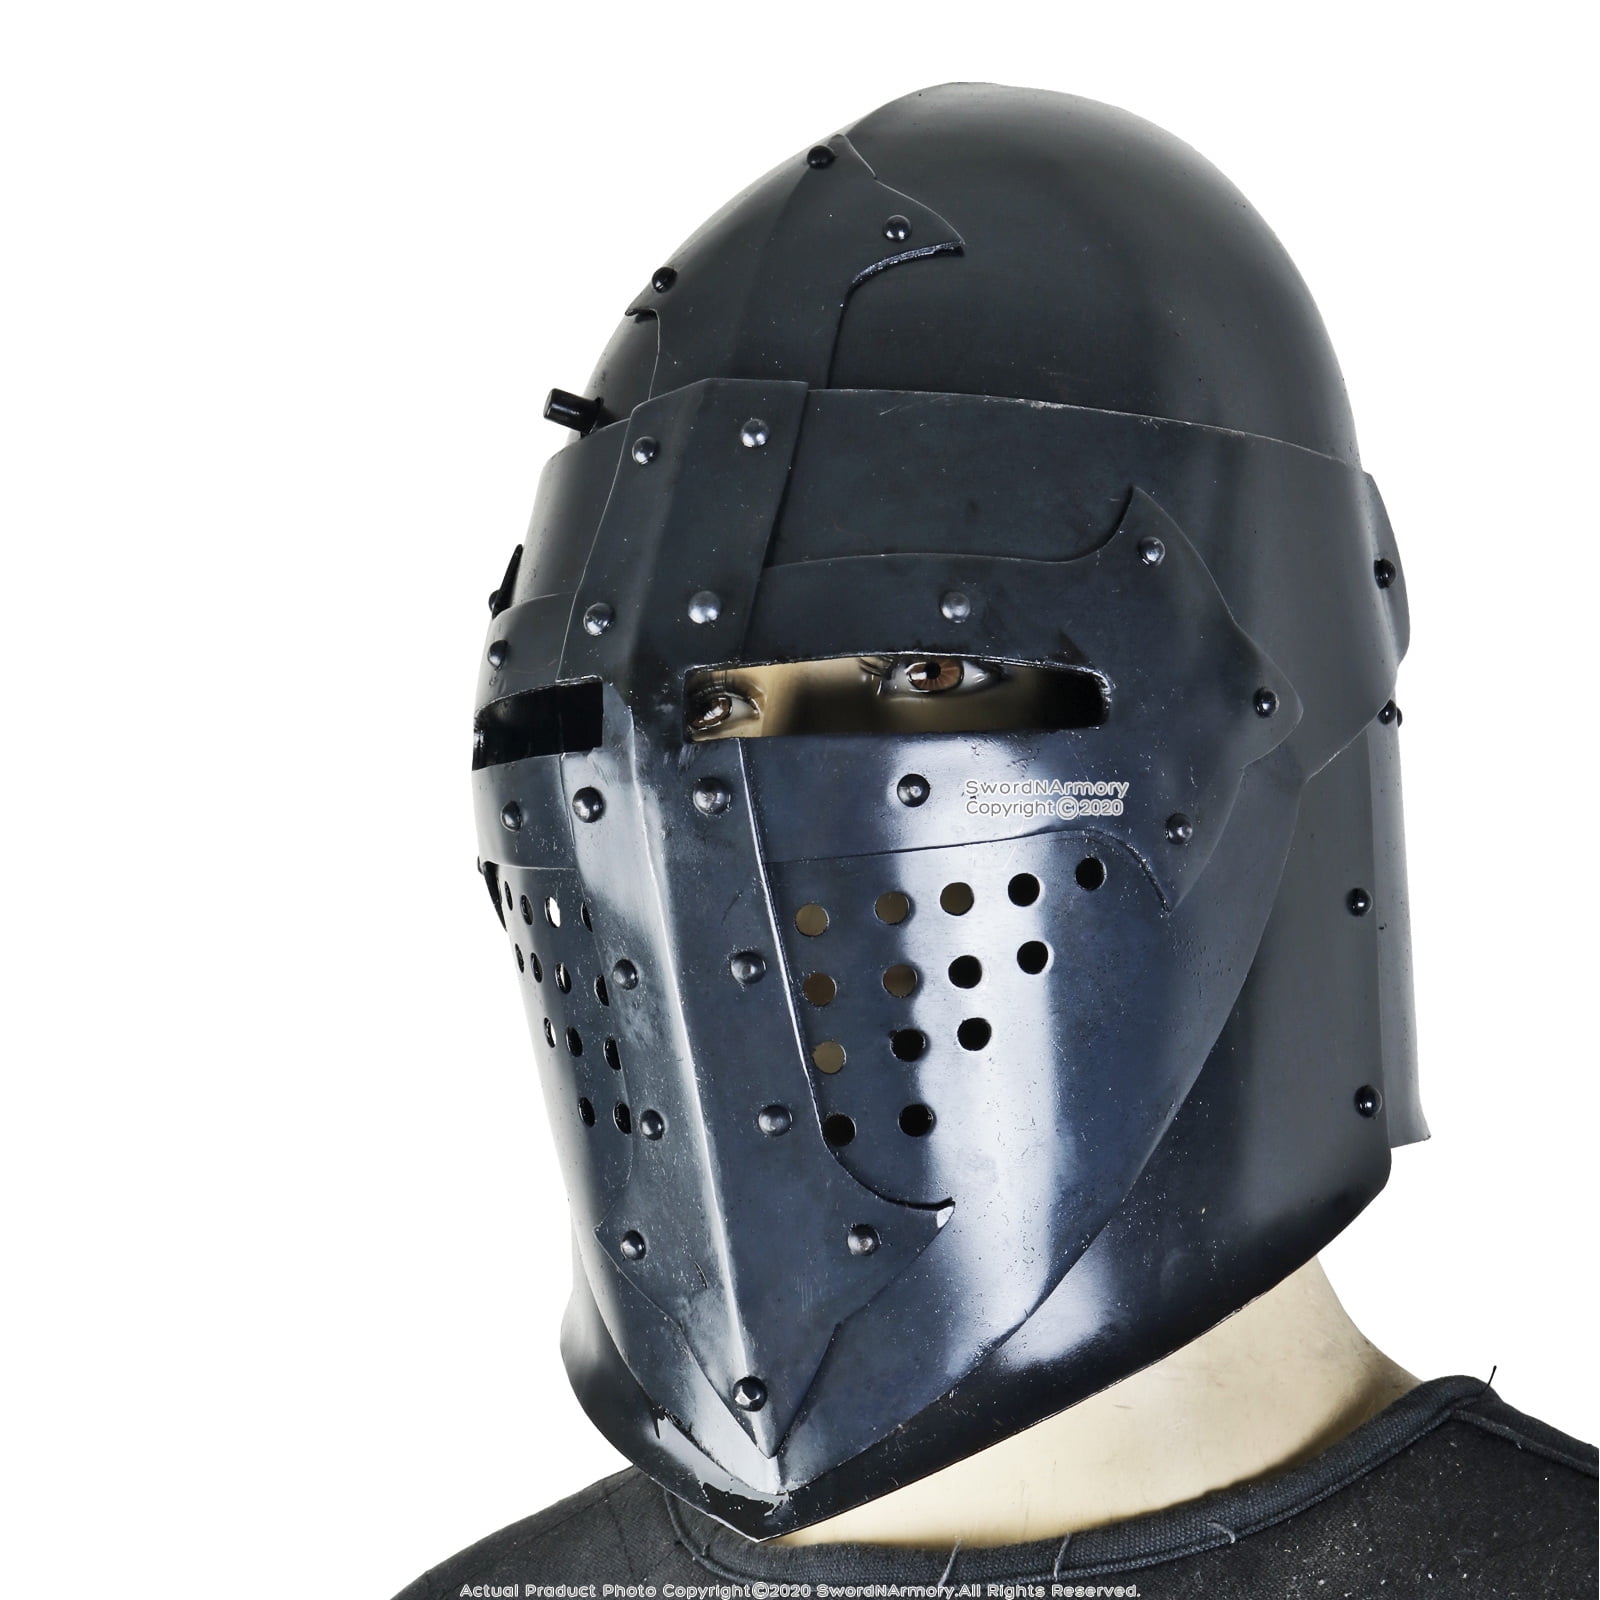 Basient helmet fully functional wearable knight helmet 